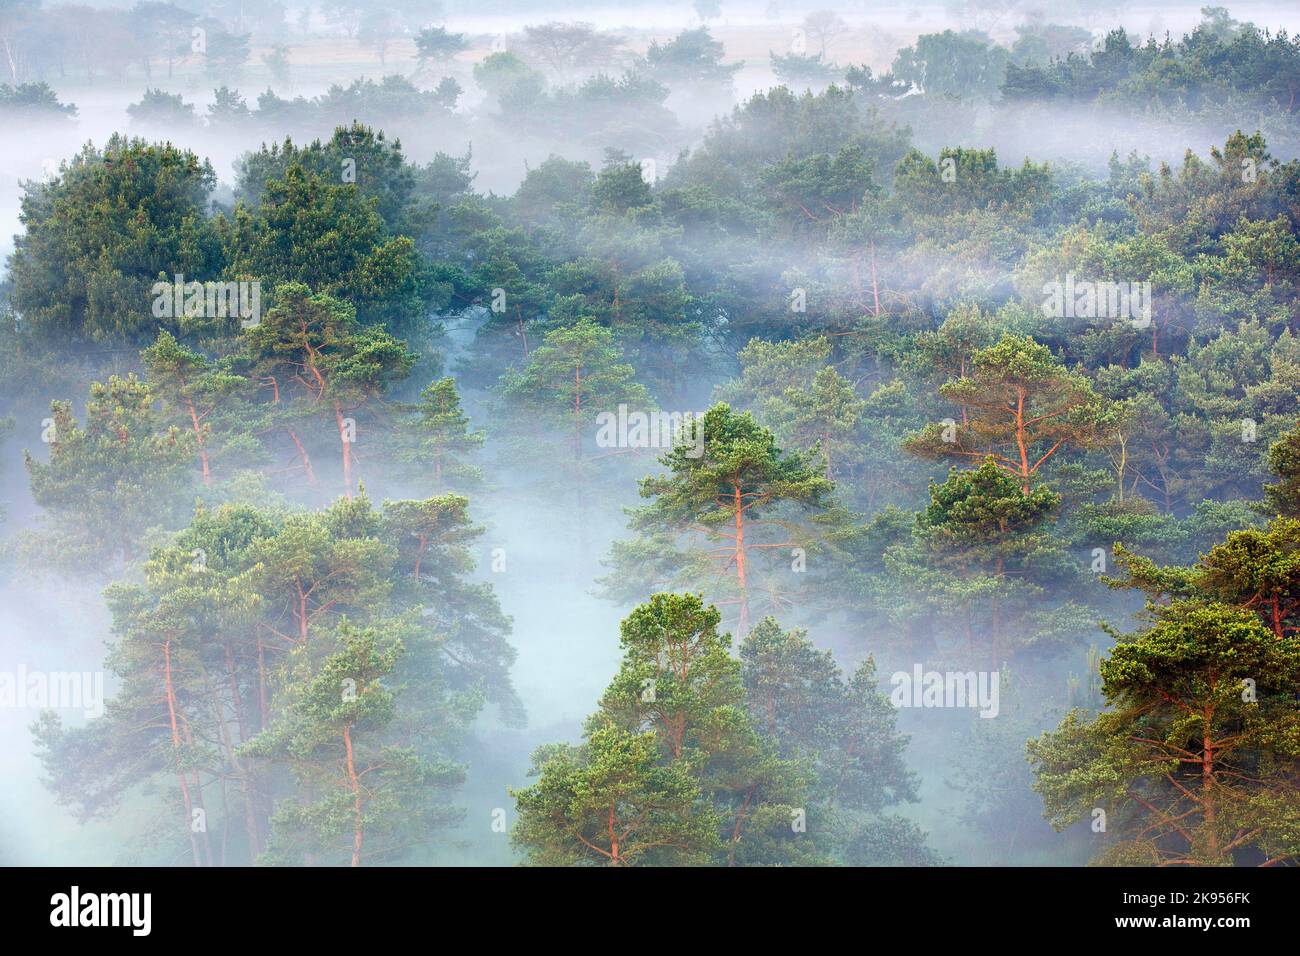 Le brouillard couvre la forêt de pins, vue aérienne, Belgique, Anvers, Kalmthout, heide de Kalmthoutse Banque D'Images